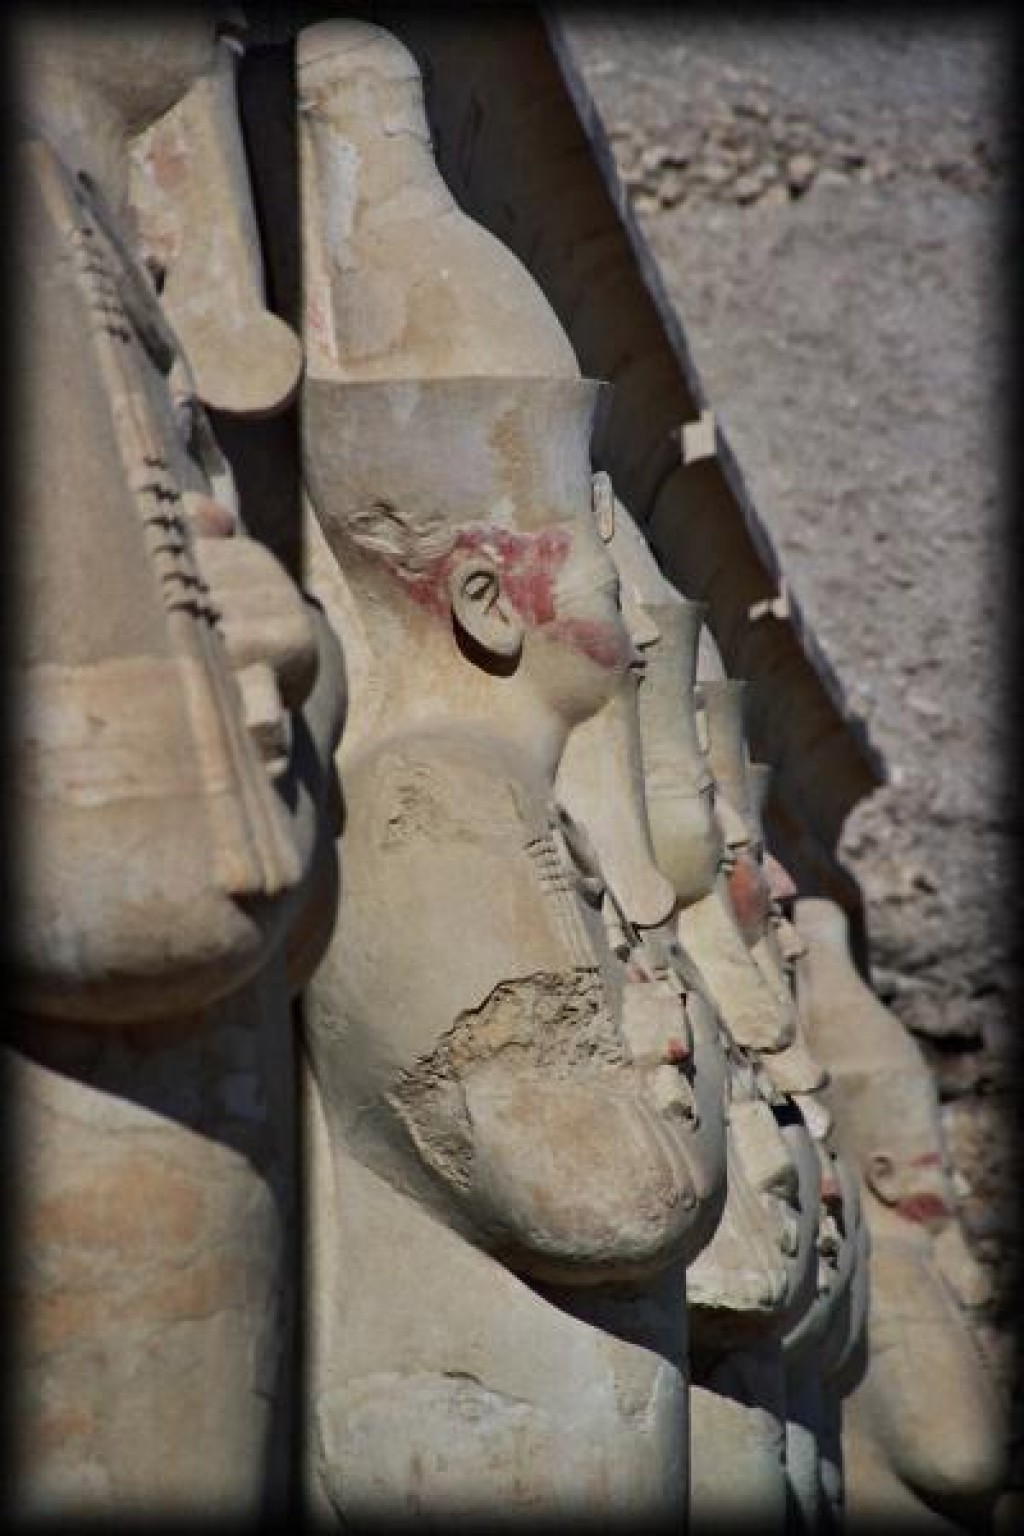 Temple of Queen Hatshepsut, Luxor